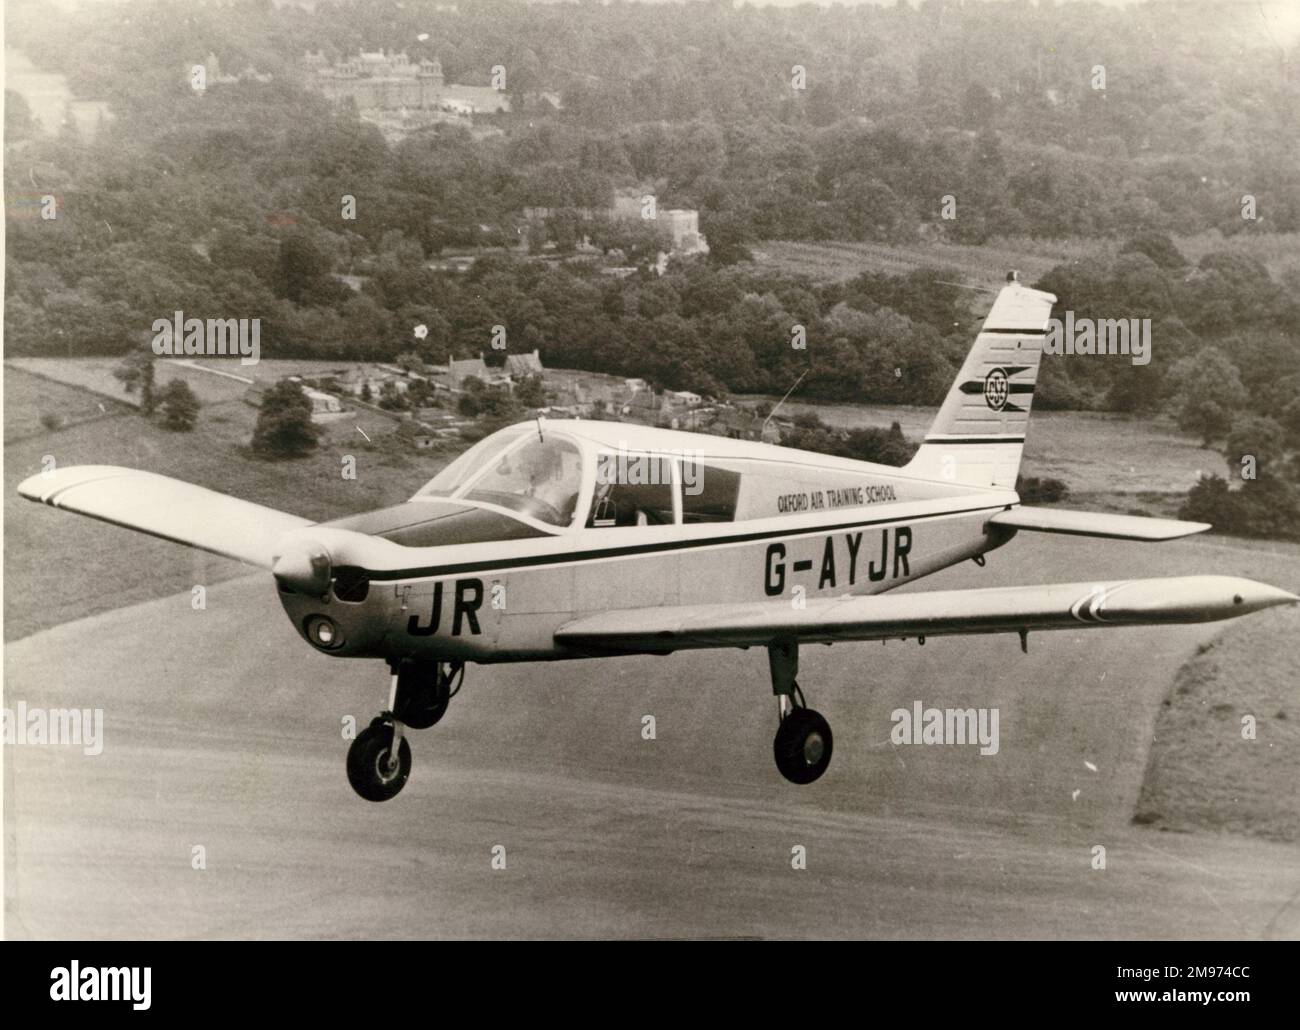 Piper Cherokee 140, G-AYJR, de l'école d'entraînement aérien d'Oxford, volant près du palais de Blenheim. Banque D'Images